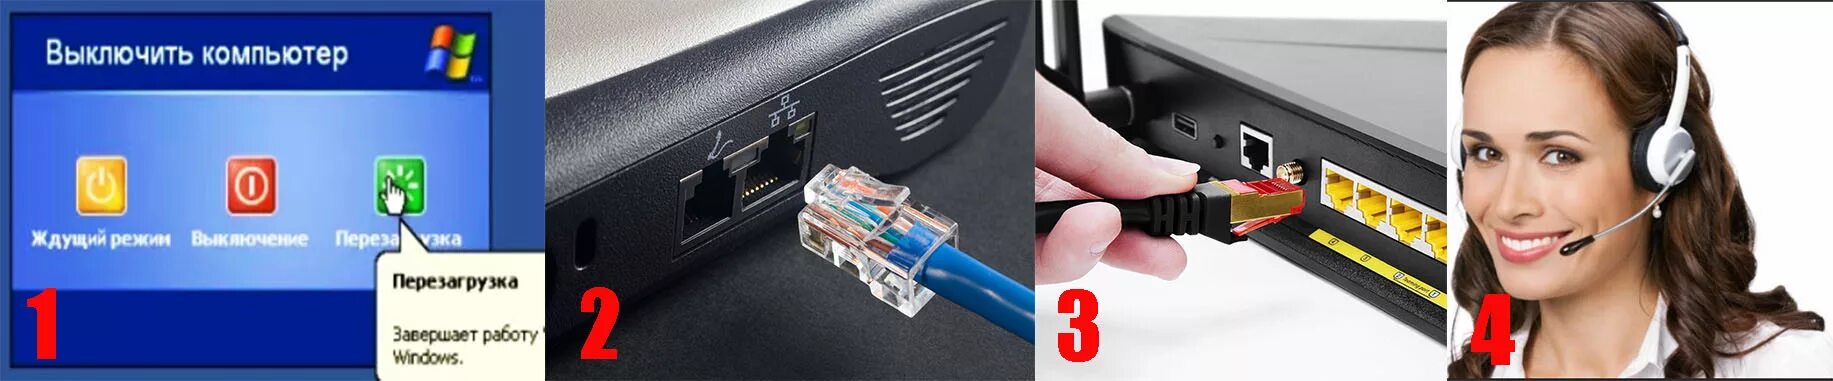 Сетевой кабель подключен неправильно. Патч-корд для роутера. Кабель Ethernet подключен неправильно или поврежден. Сетевой кабель для интернета подключен неправильно или поврежден. Ноутбук не видит сетевой кабель (шнур интернета).